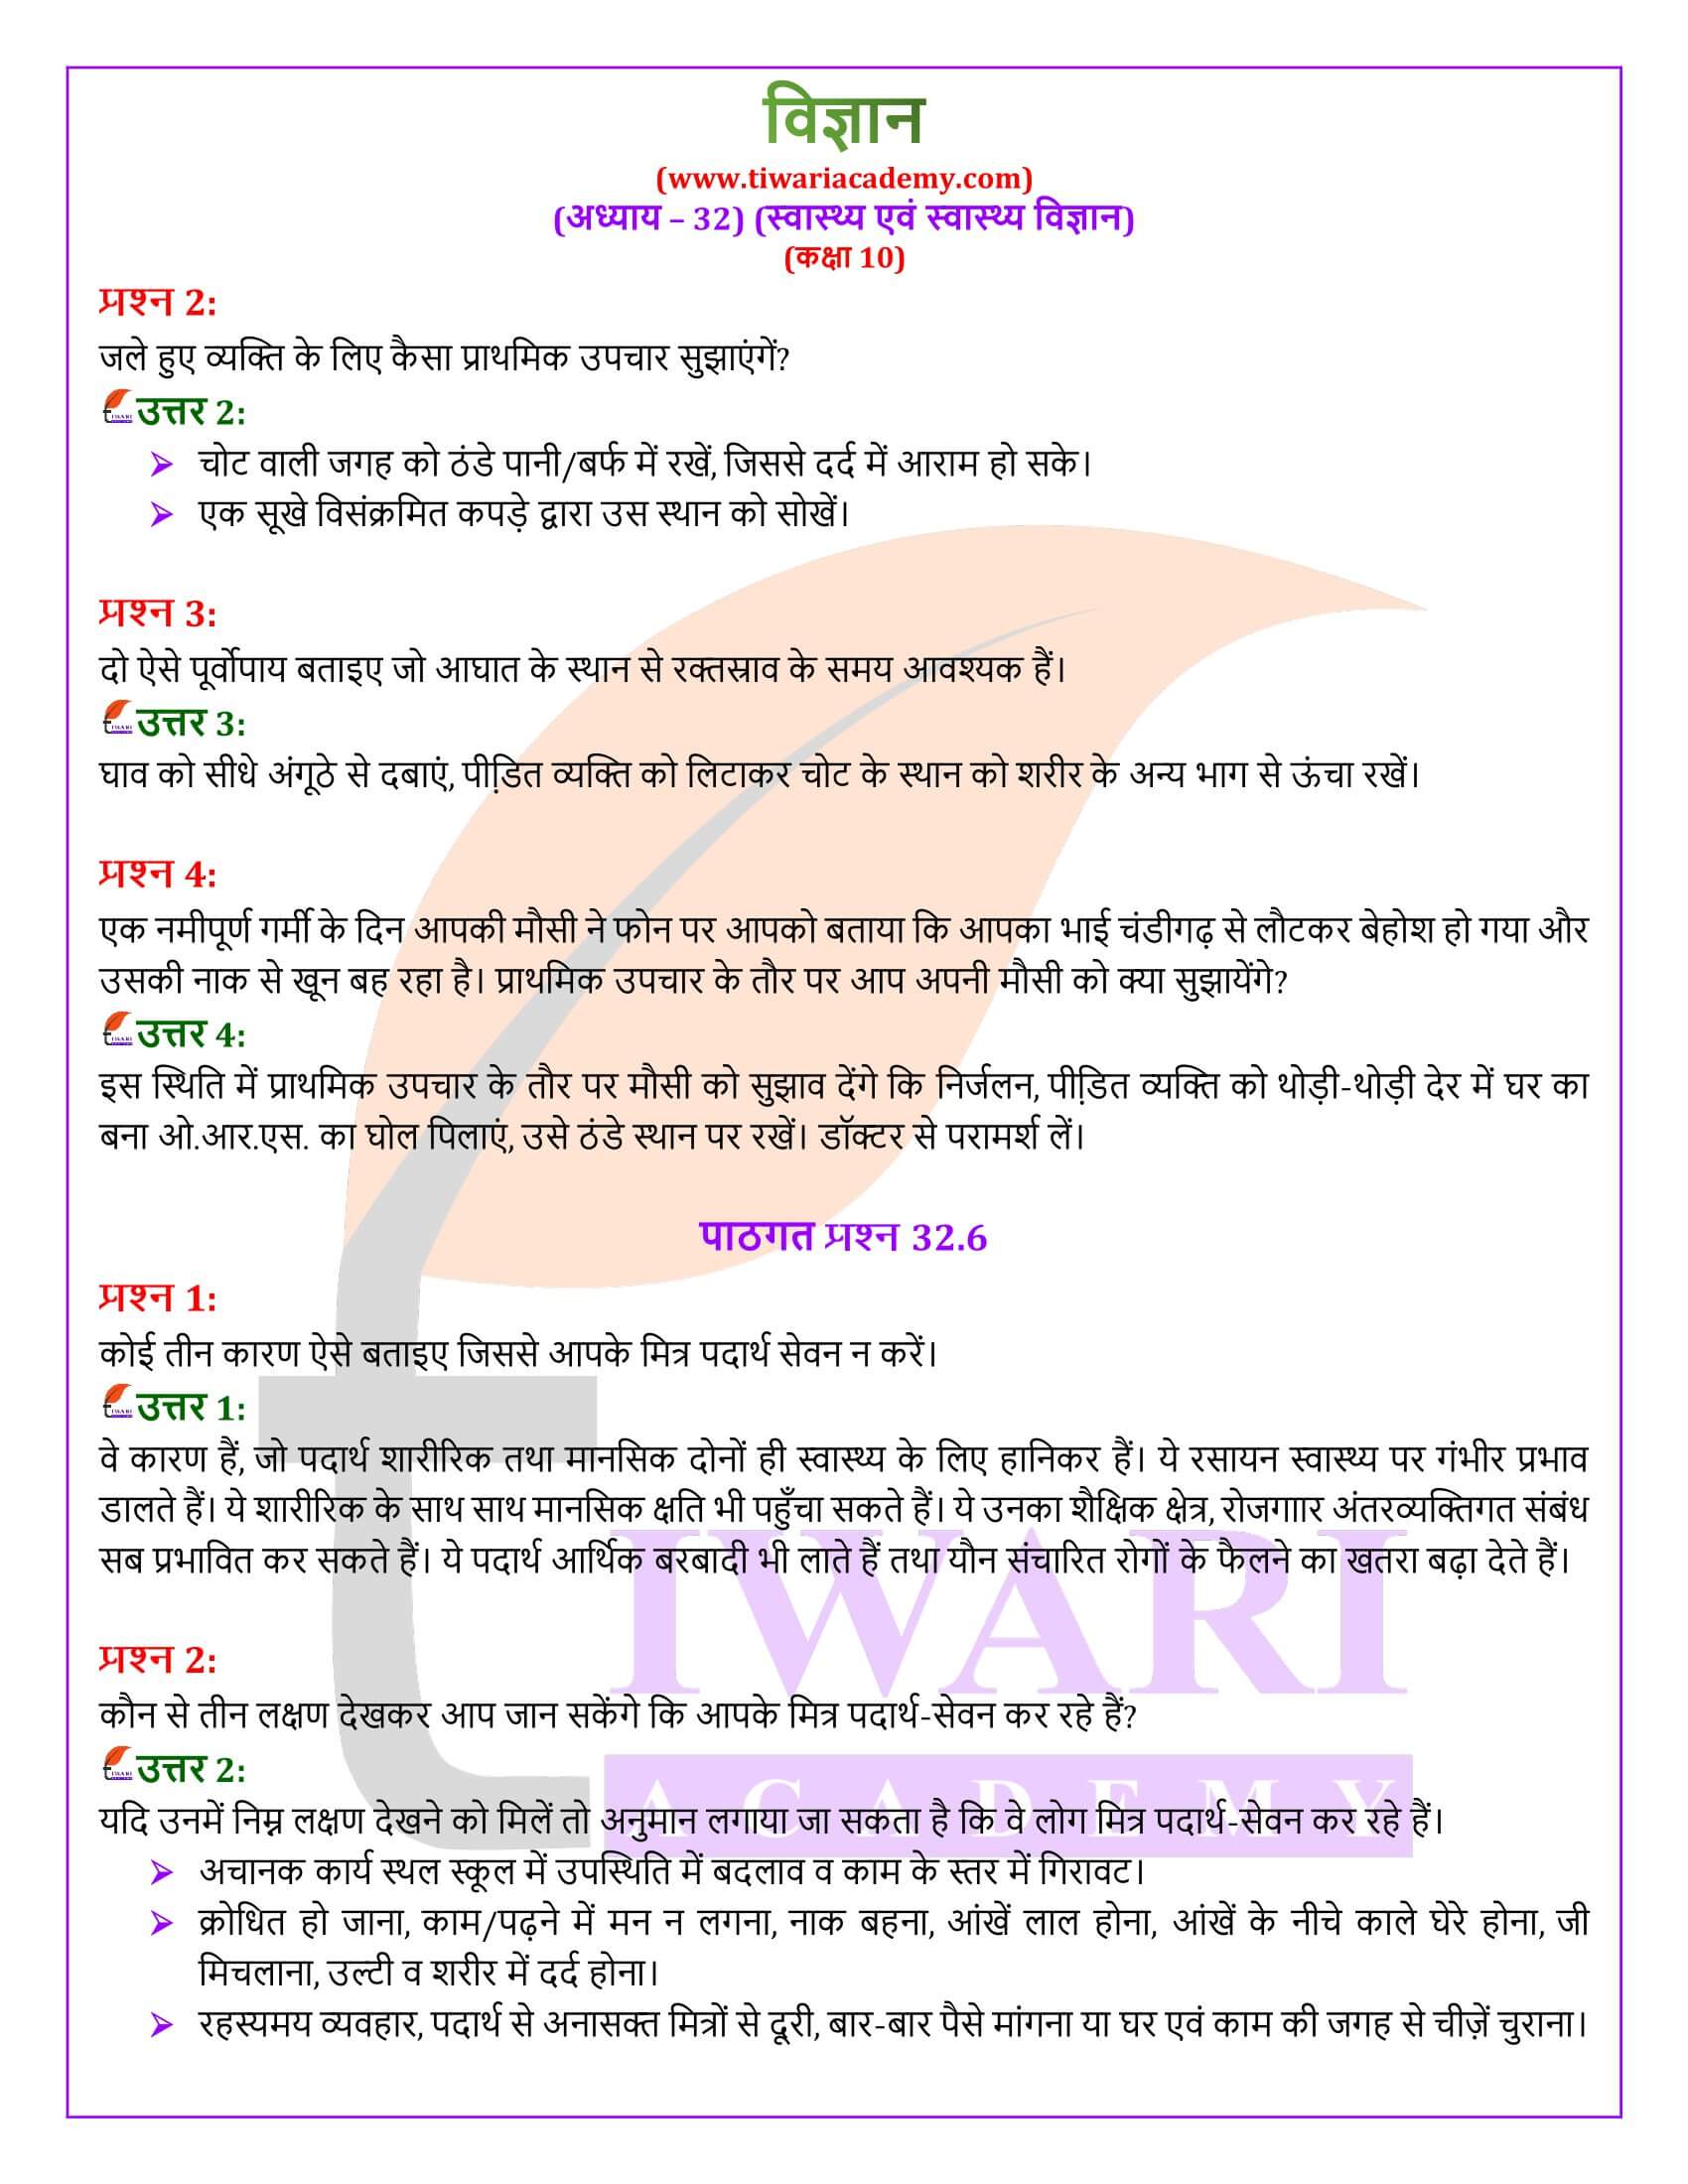 NIOS कक्षा 10 विज्ञान अध्याय 32 के हल हिंदी में